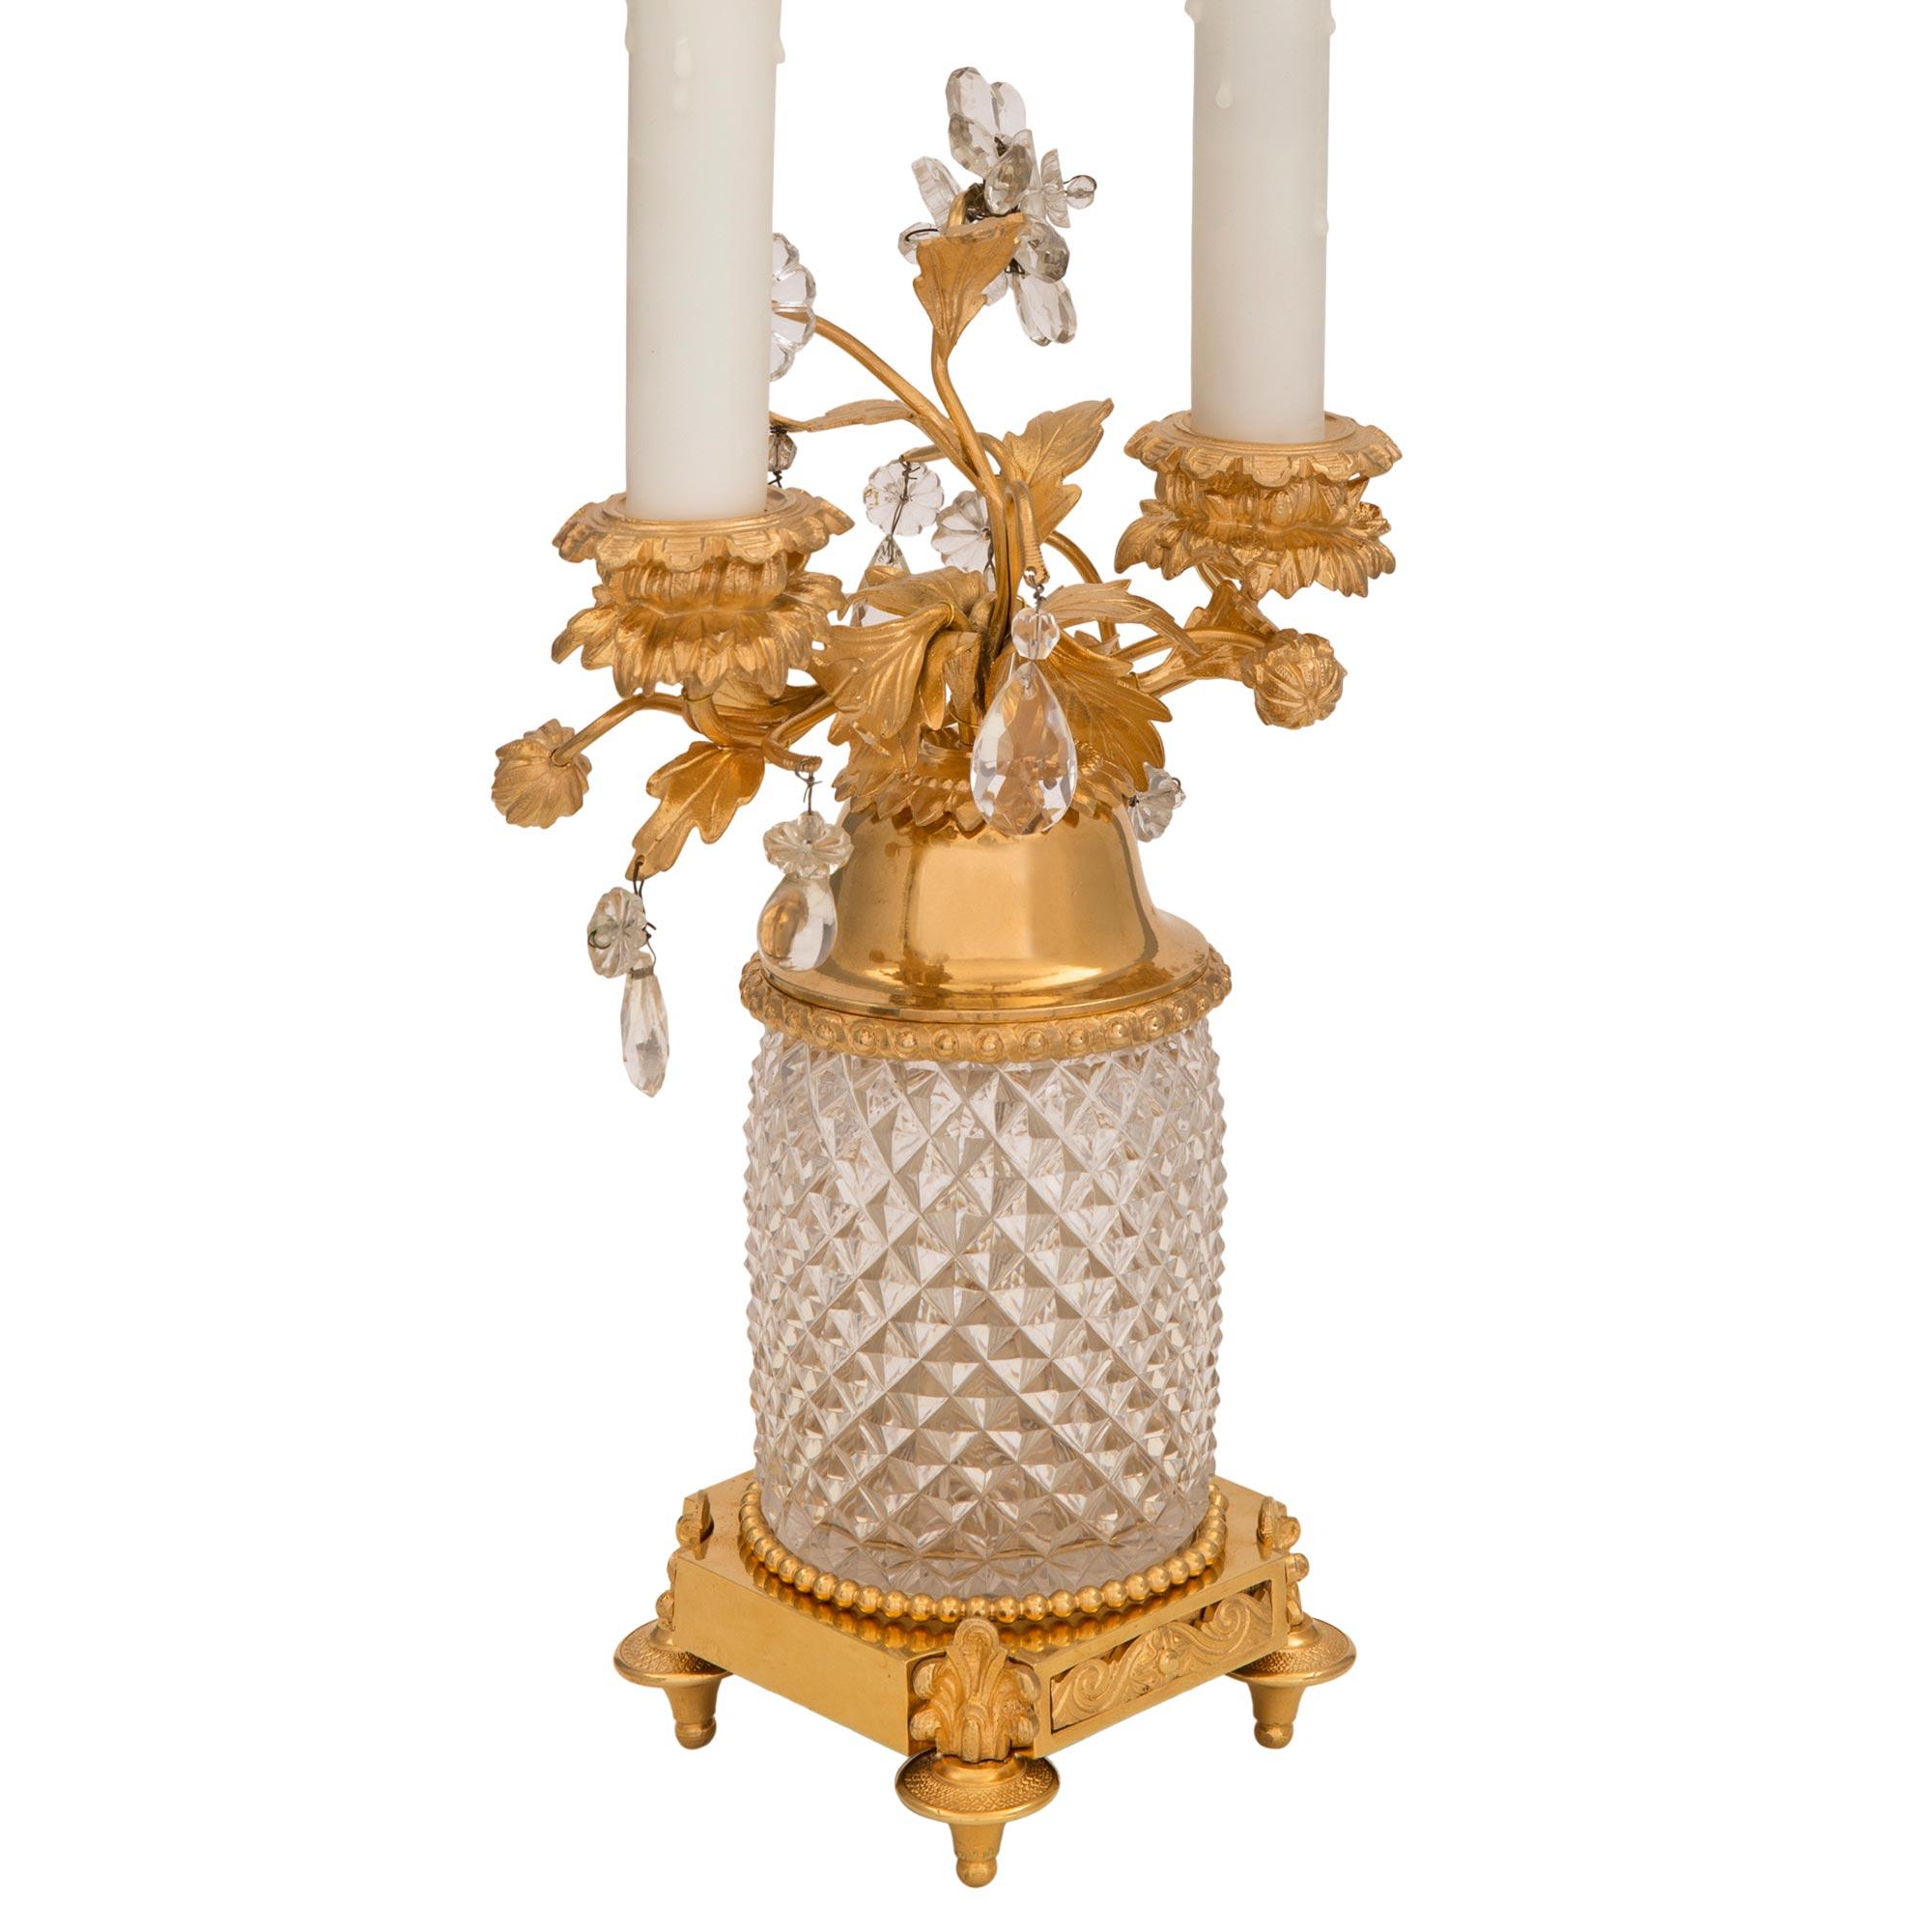 Une paire exceptionnelle de lampes de style Louis XVI du début du siècle, en bronze doré et cristal. Chaque lampe à deux bras est surélevée par une base carrée avec de fins pieds en forme de topie ornés de beaux éléments de palmettes centrant une